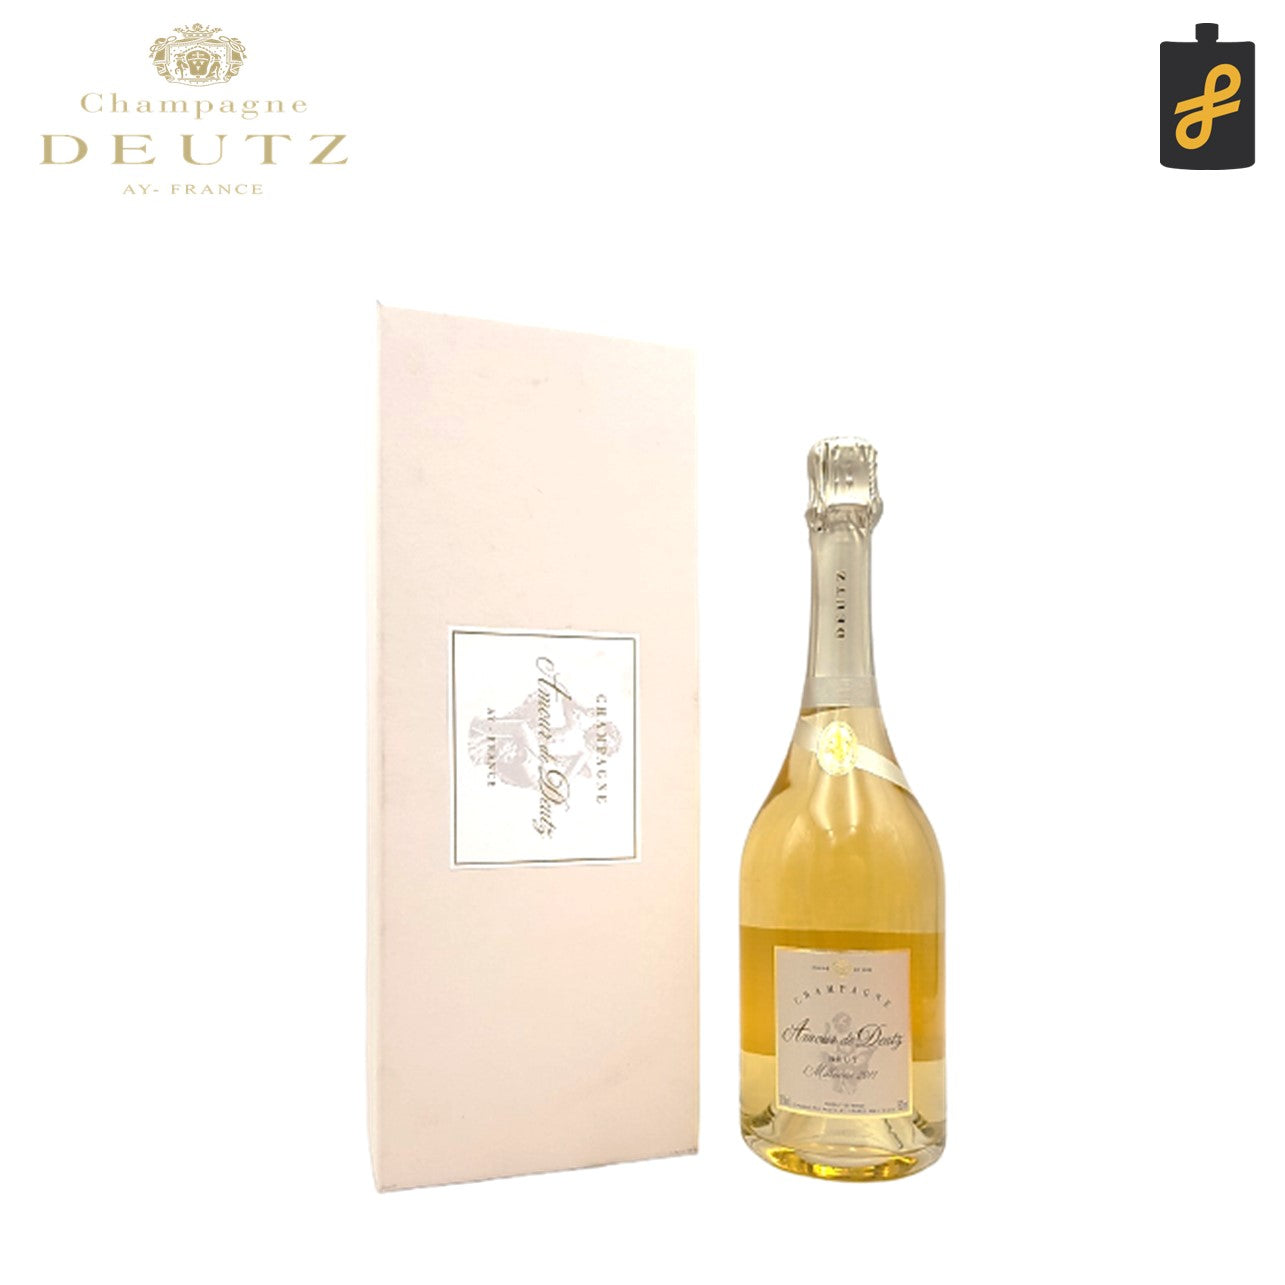 2008 Deutz Champagne Amour de Deutz, Blanc de Blancs, Bottle (750mL)